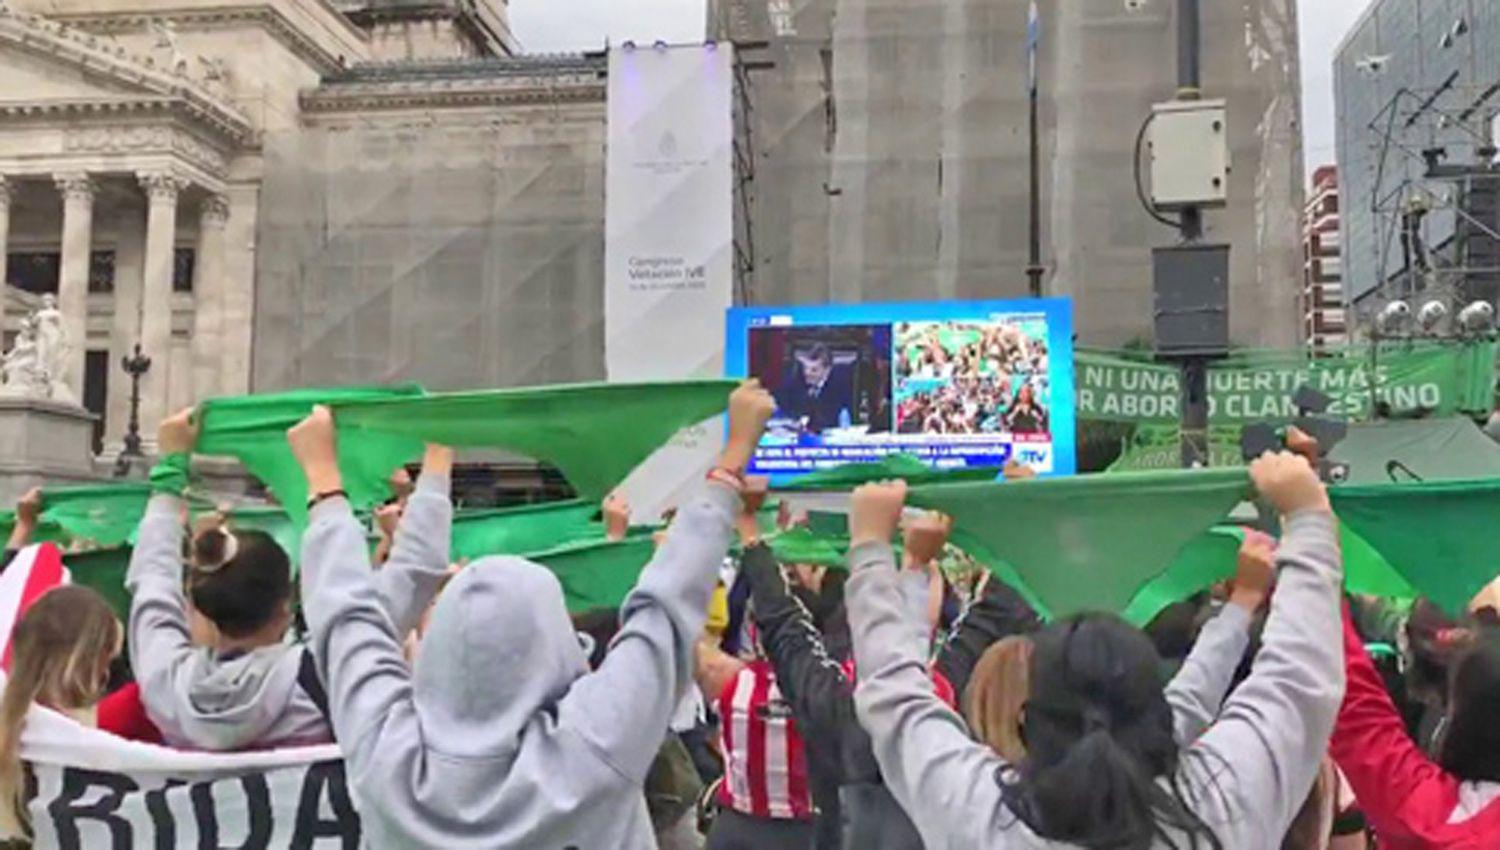 Pantildeuelos verdes celebraron en el exterior del Congreso